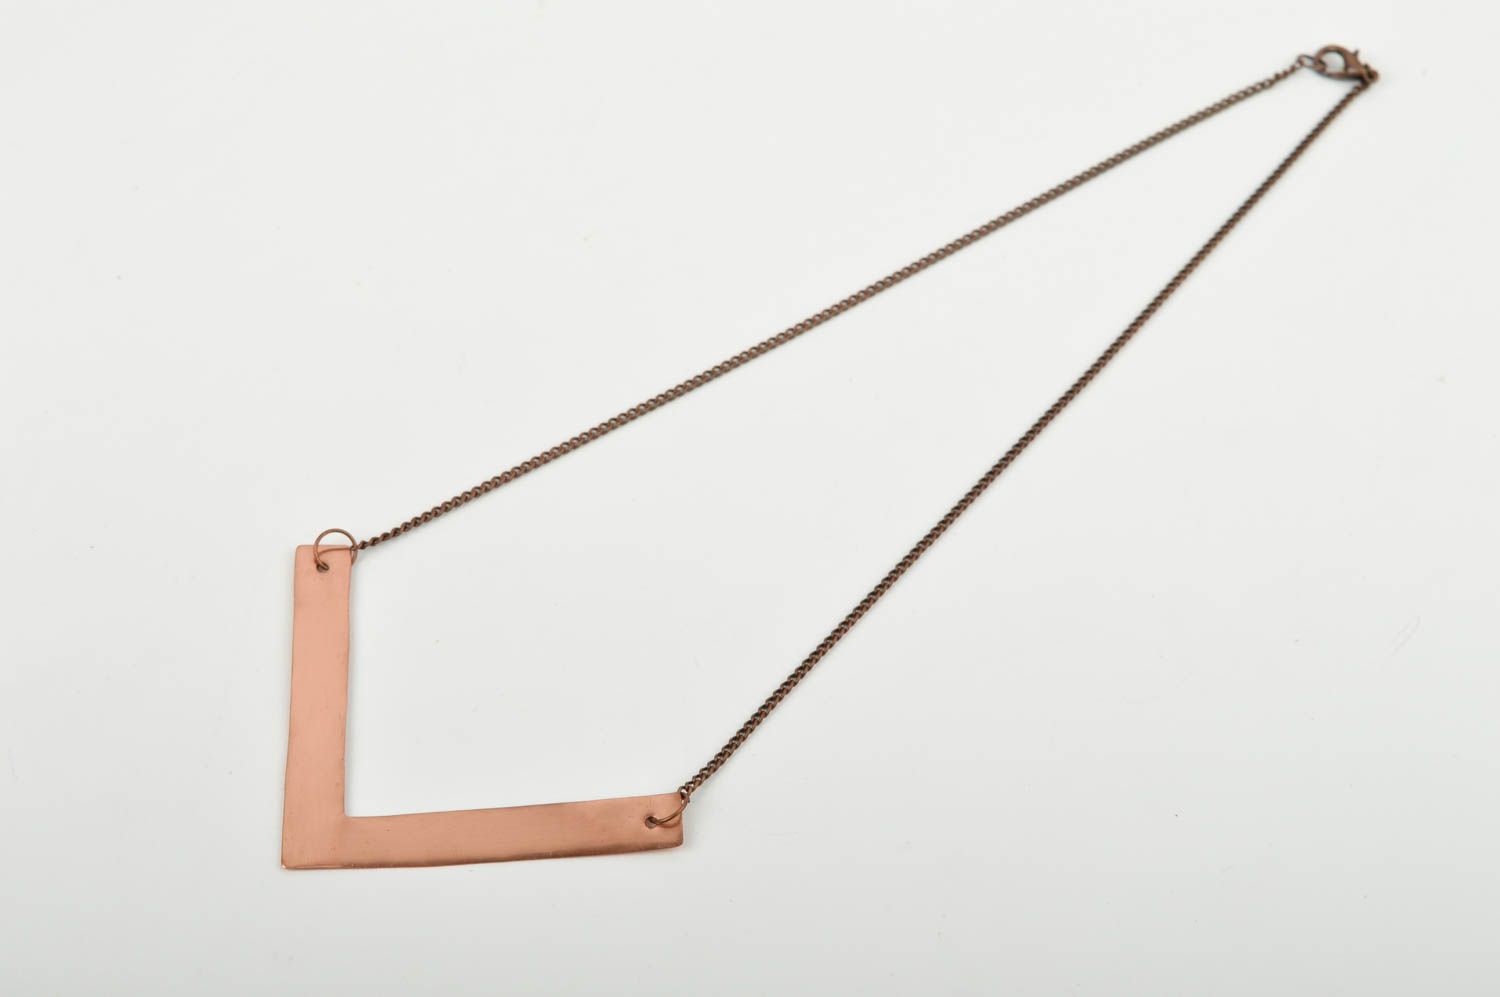 Handmade designer copper pendant unusual pendant on chain gift for her photo 3